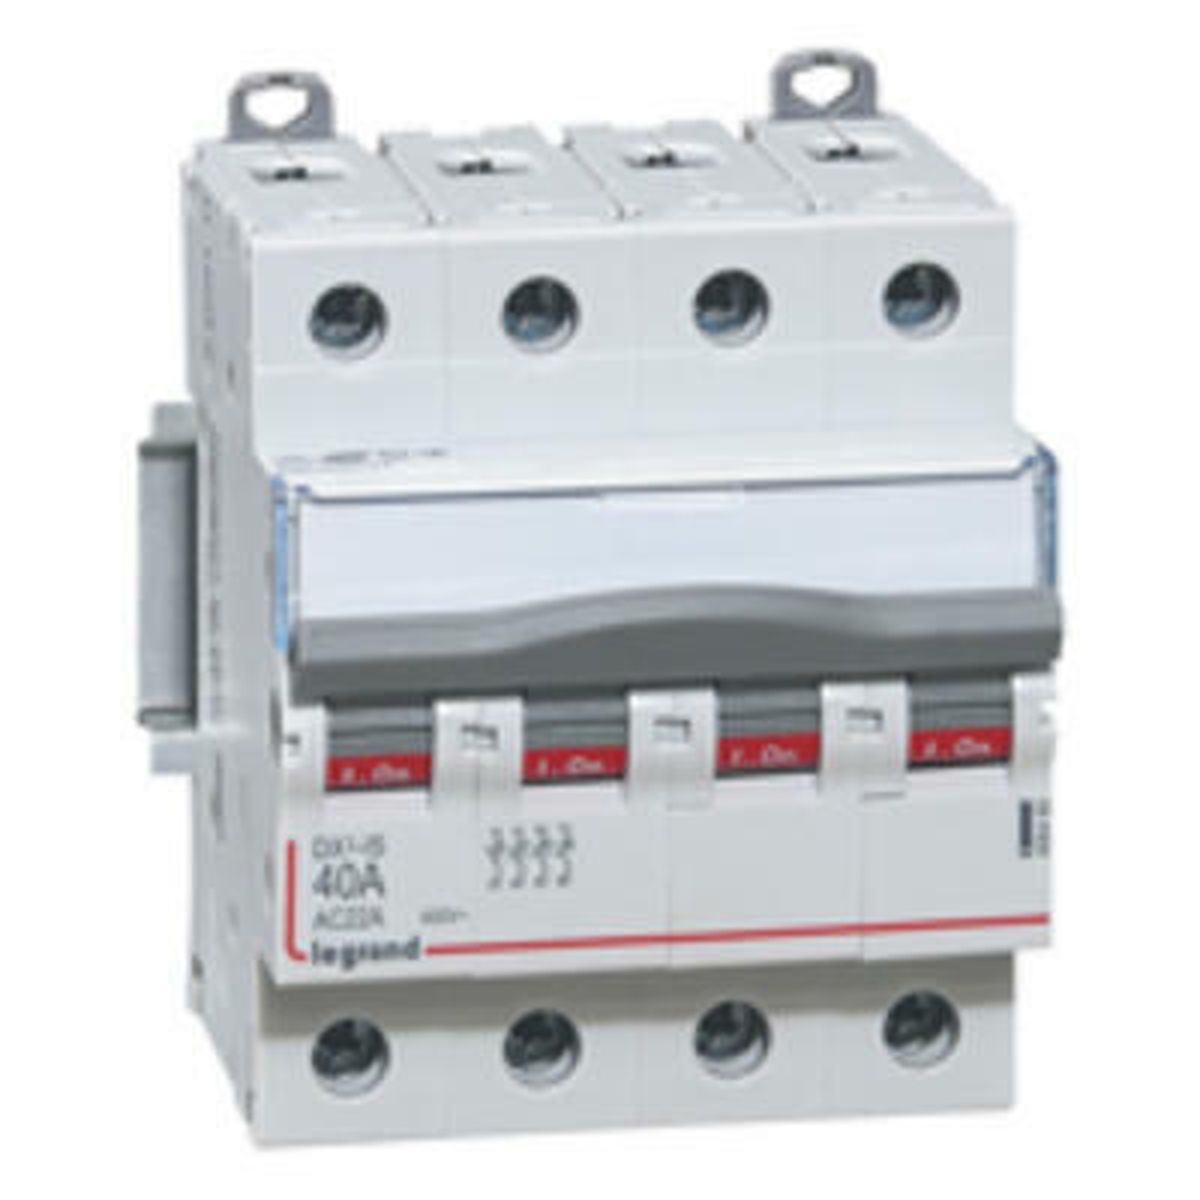 406480 - DX3 Interrupteur sectionneur tétrapolaire 400V 40A - 406480 - Legrand - 0